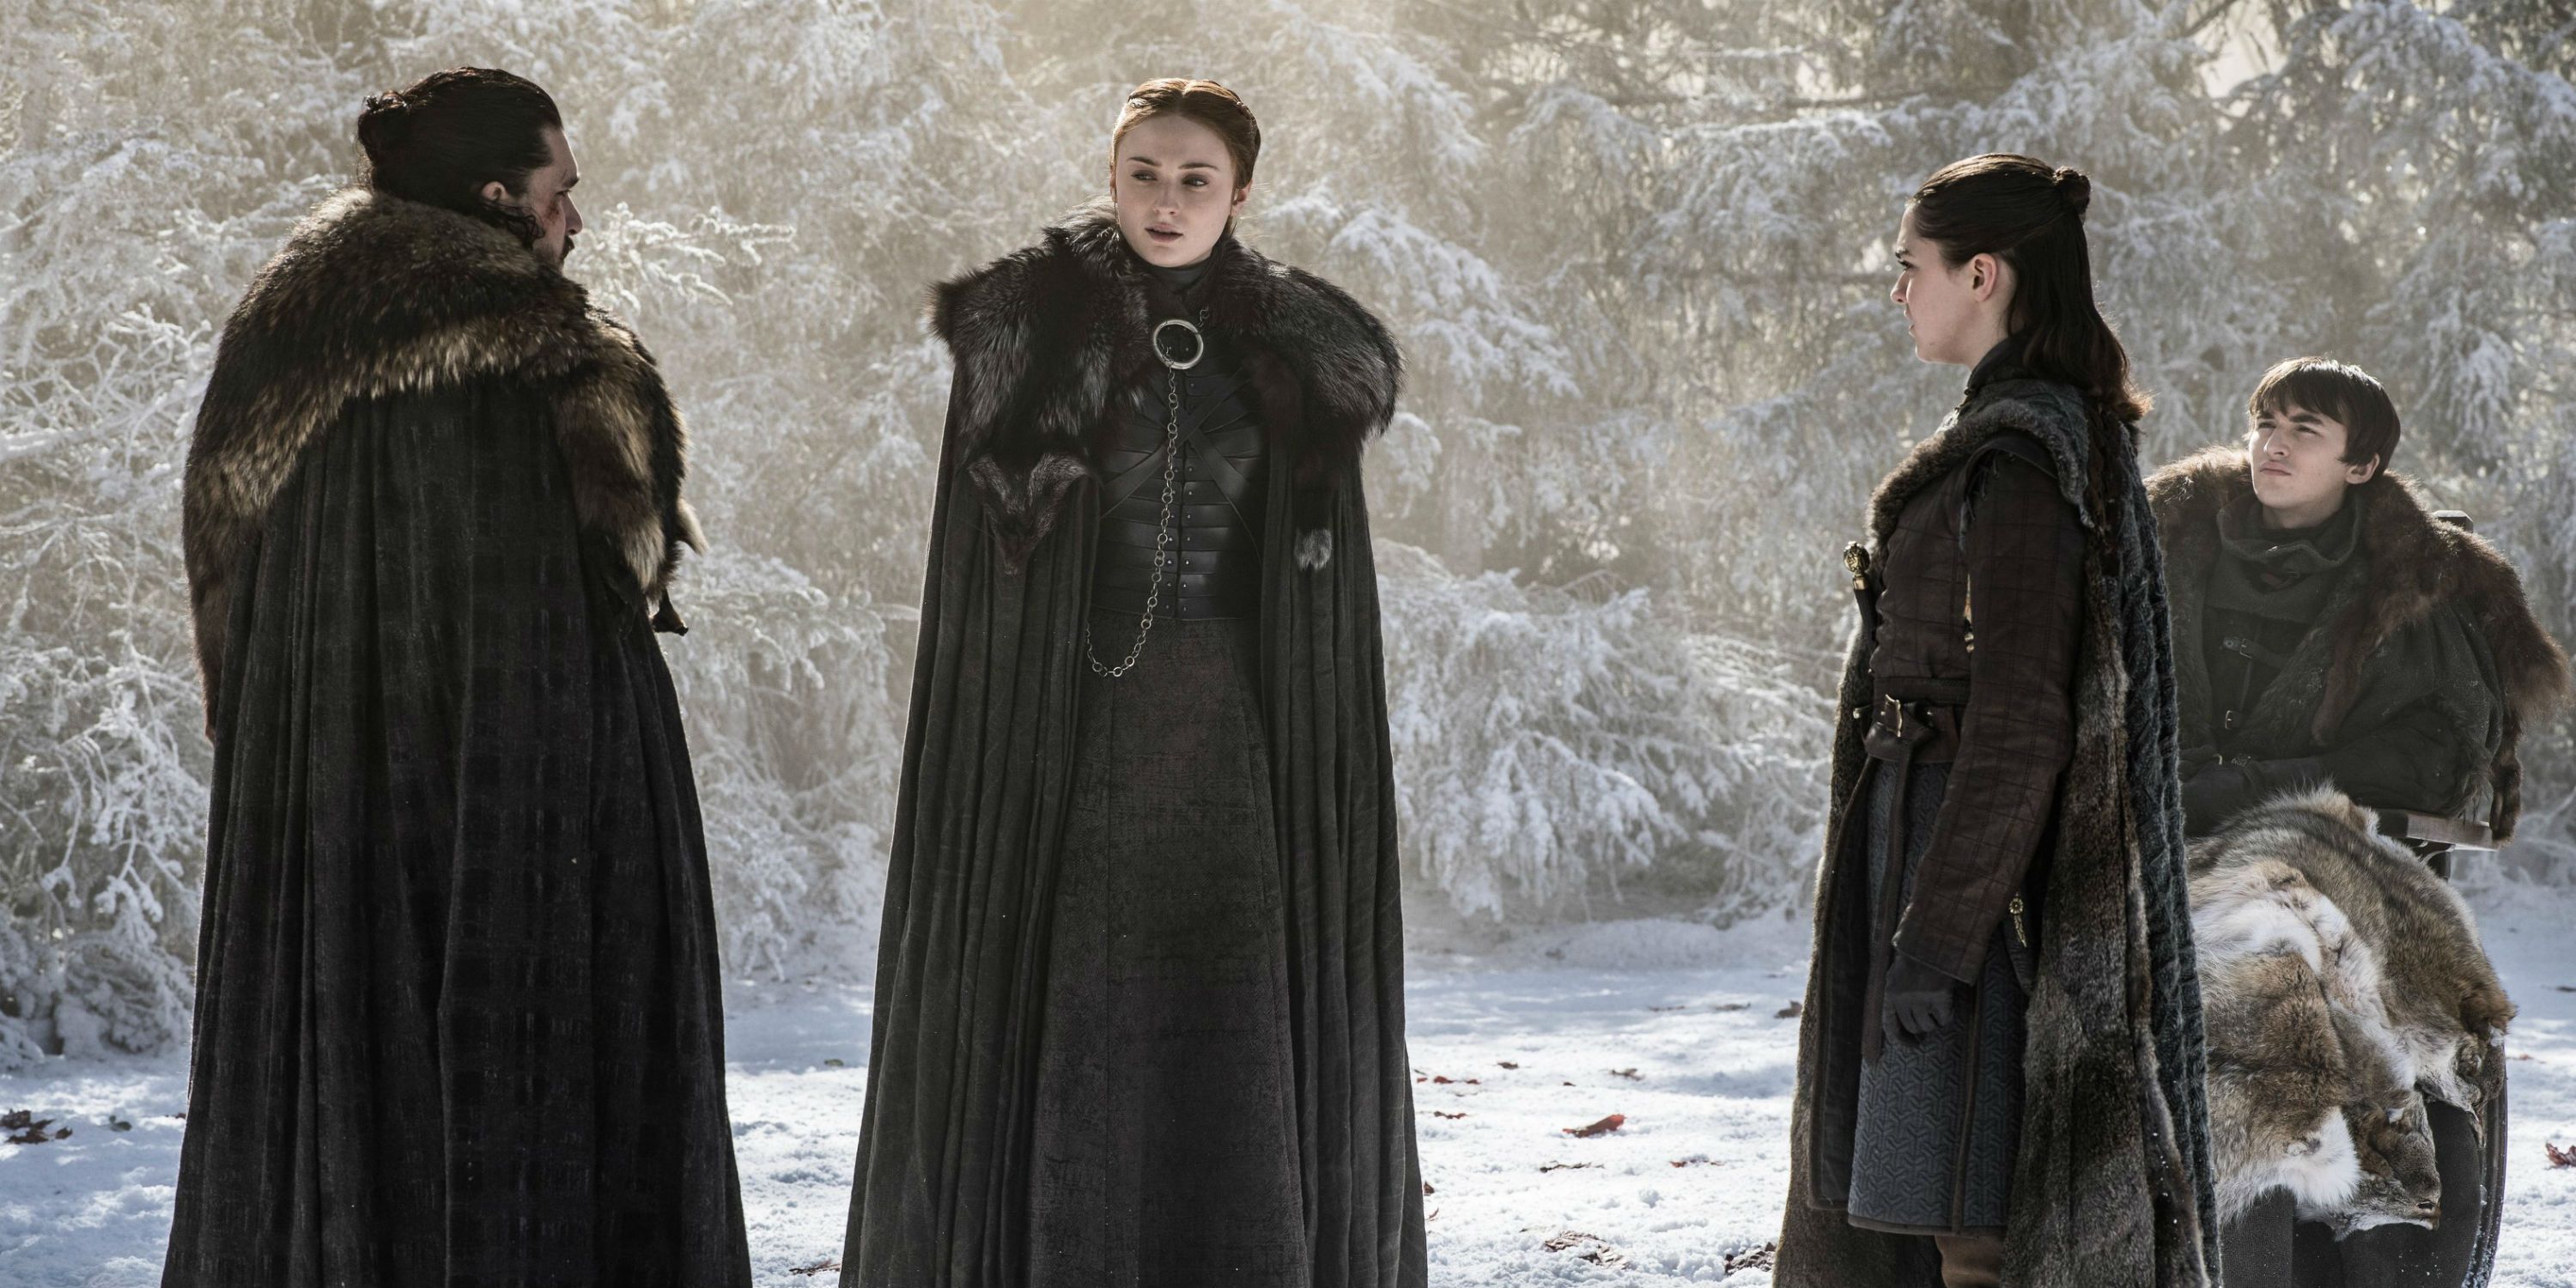 Jon Sansa Arya Bran no bosque sagrado na 8ª temporada de Game of Thrones